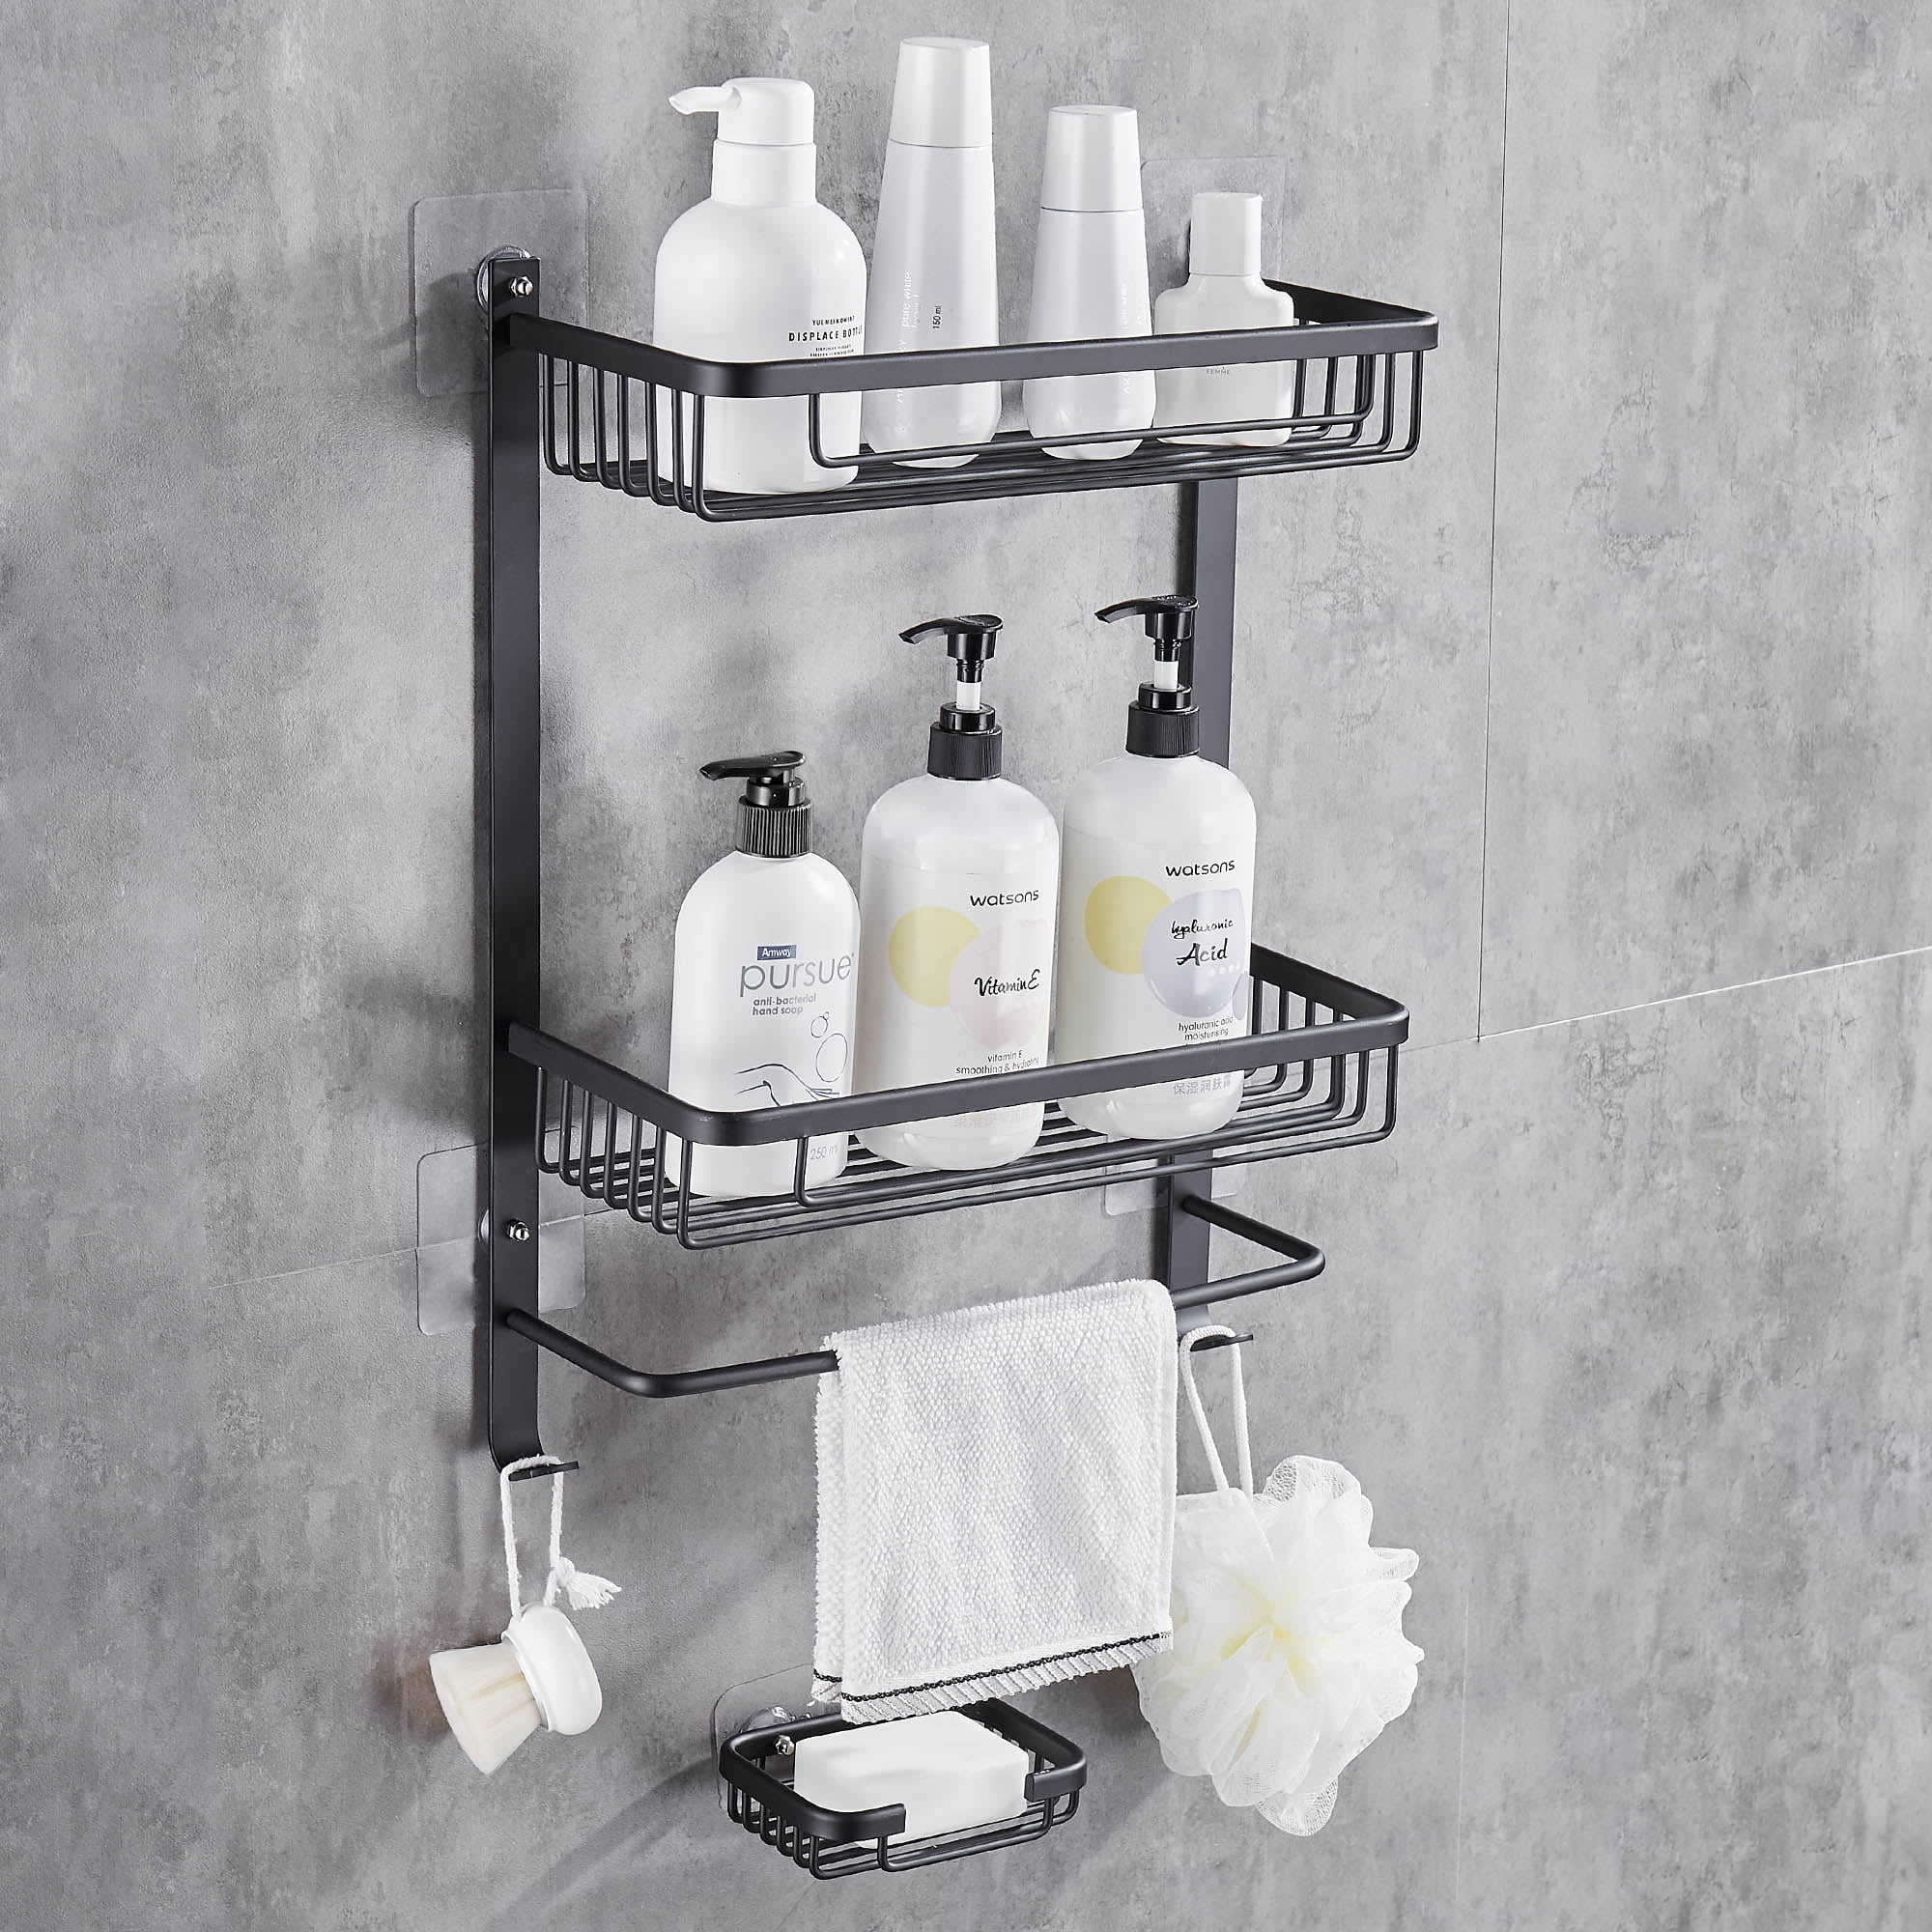 Bathroom Shower Caddy with Soap Holder, Wall Mount Shower Basket Storage, 2  Tier Shelves Aluminum Rustproof, Matte Black 